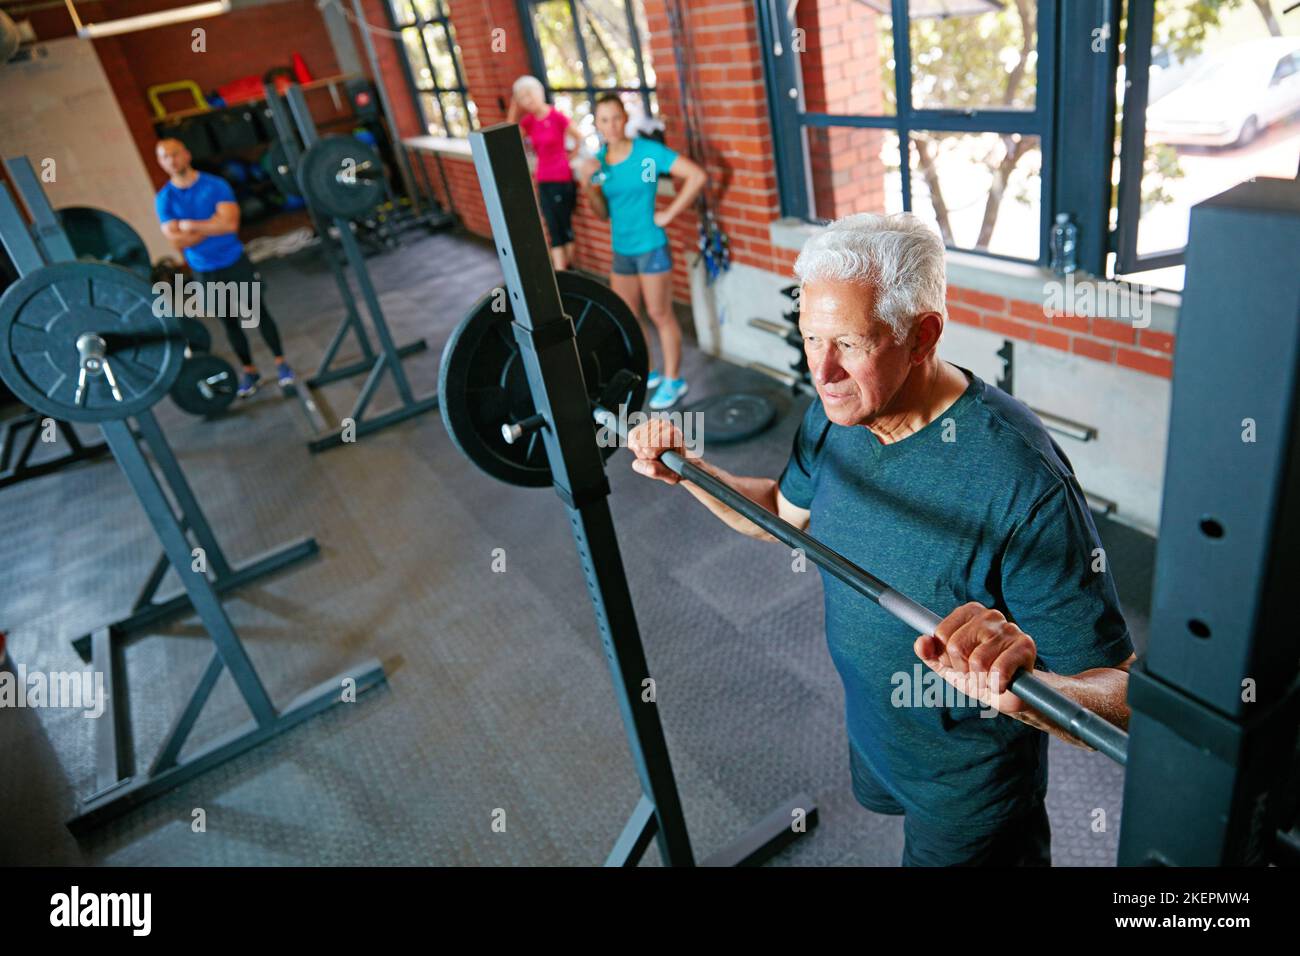 La debolezza è una scelta. Un uomo anziano che solleva i pesi mentre un gruppo della gente nel controllo di fondo sopra. Foto Stock